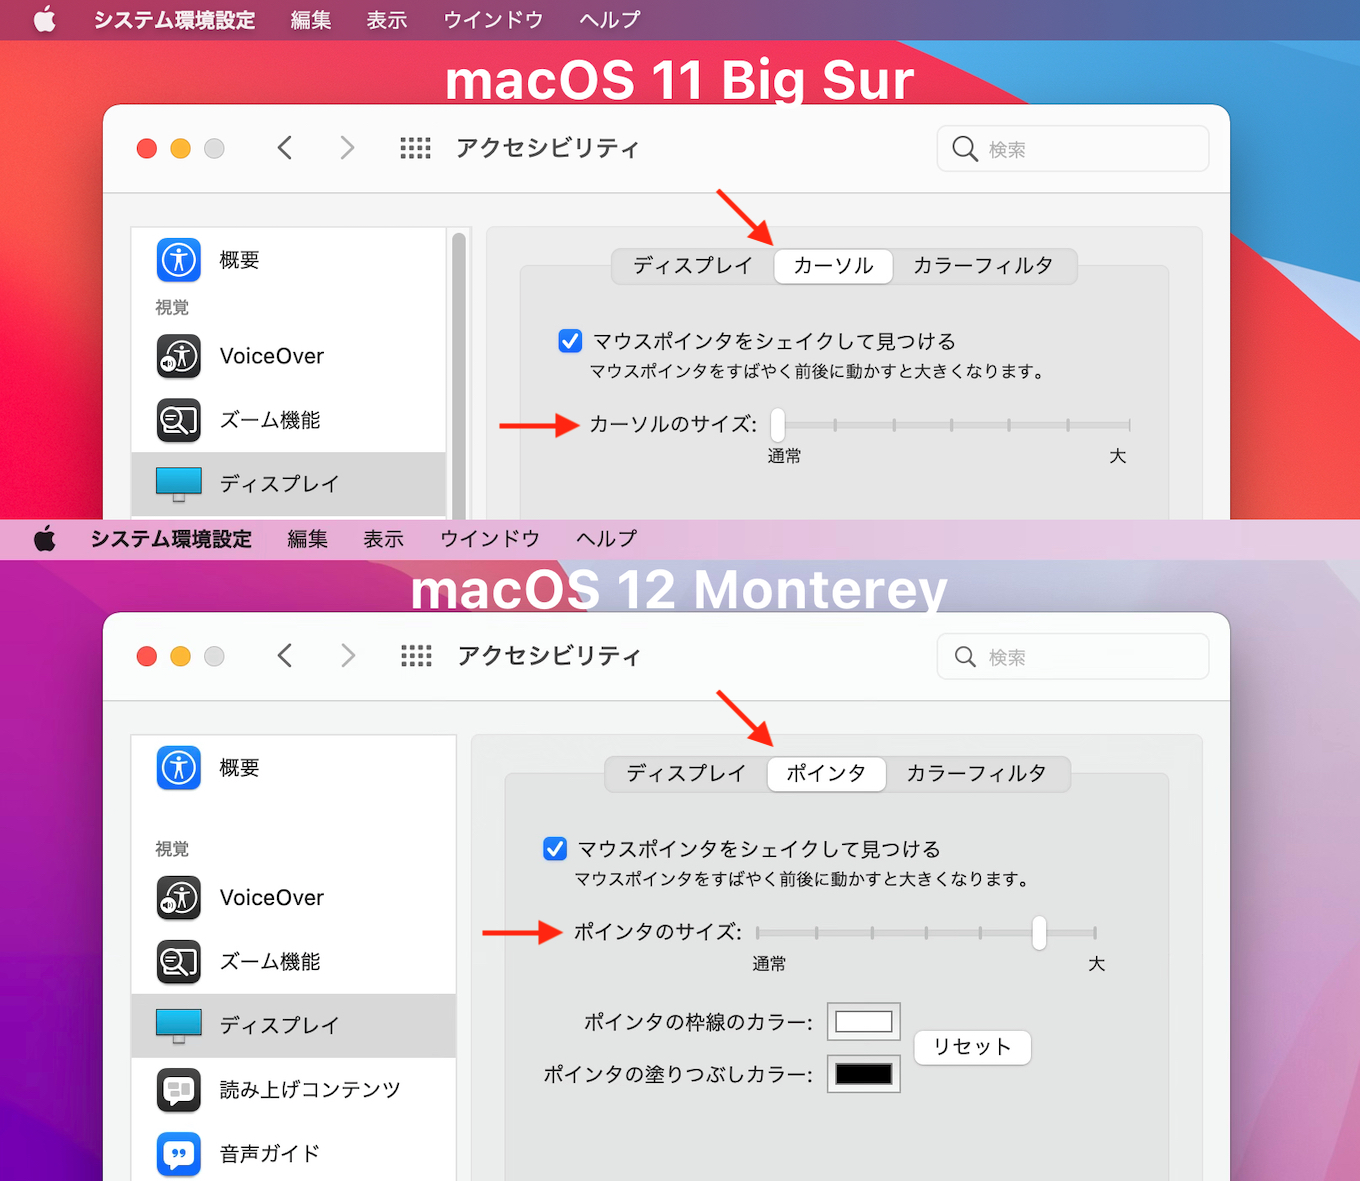 macOS 11 Big Surではマウスカーソル、macOS 12 Montereyではマウスポインタ